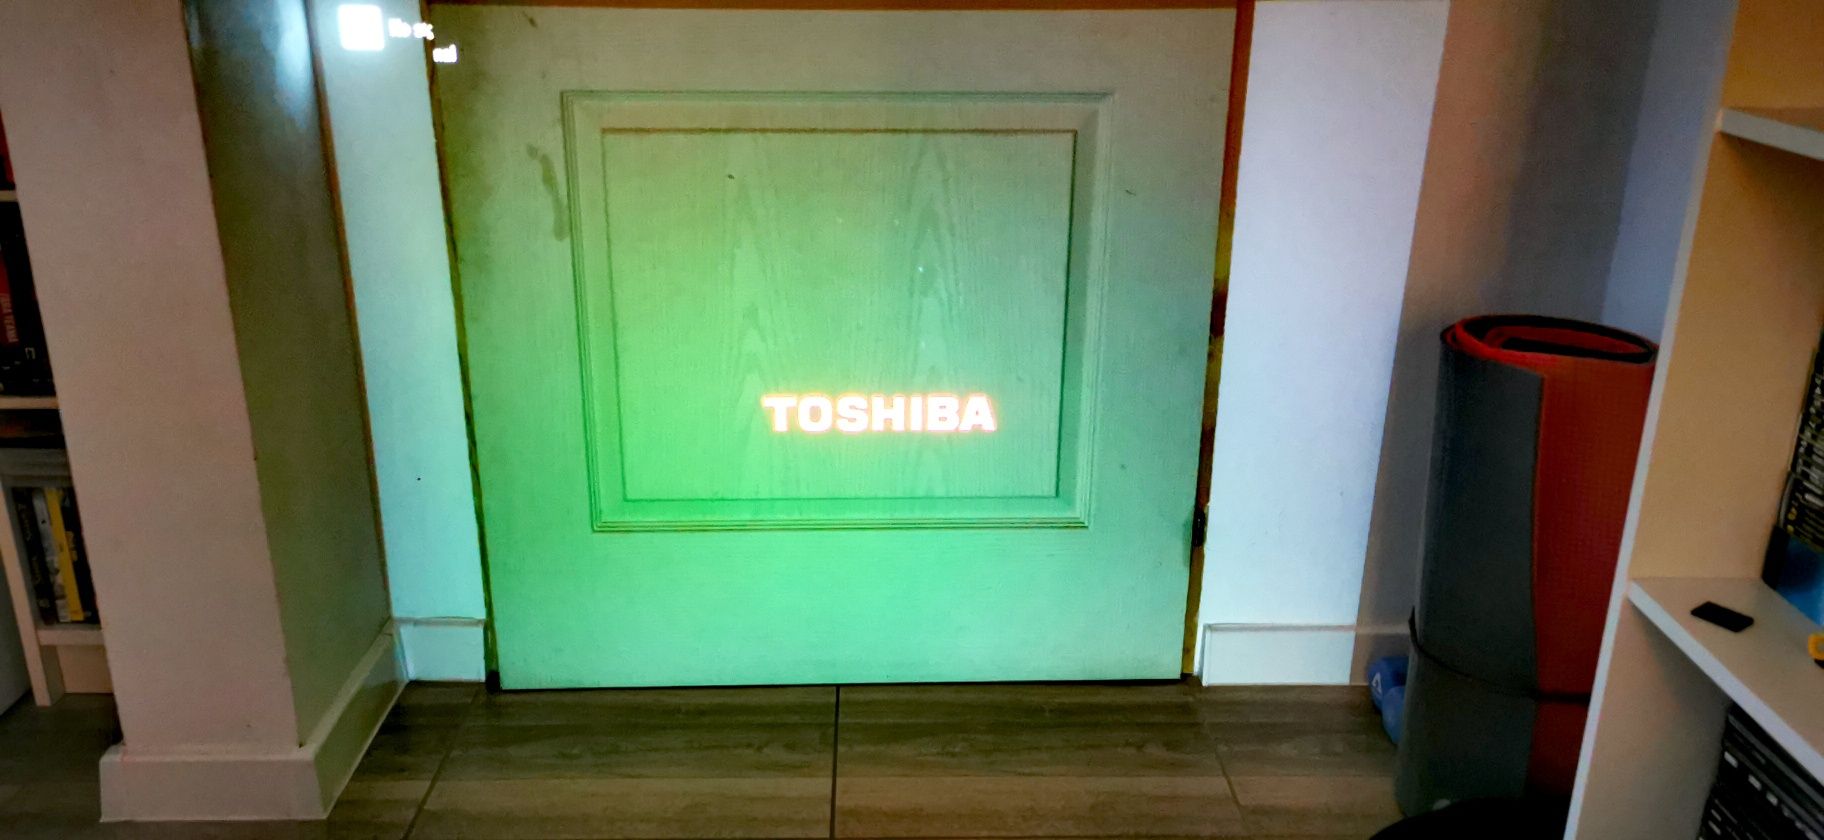 Video proiector Toshiba TLP-X2000 videoproiector de colecție